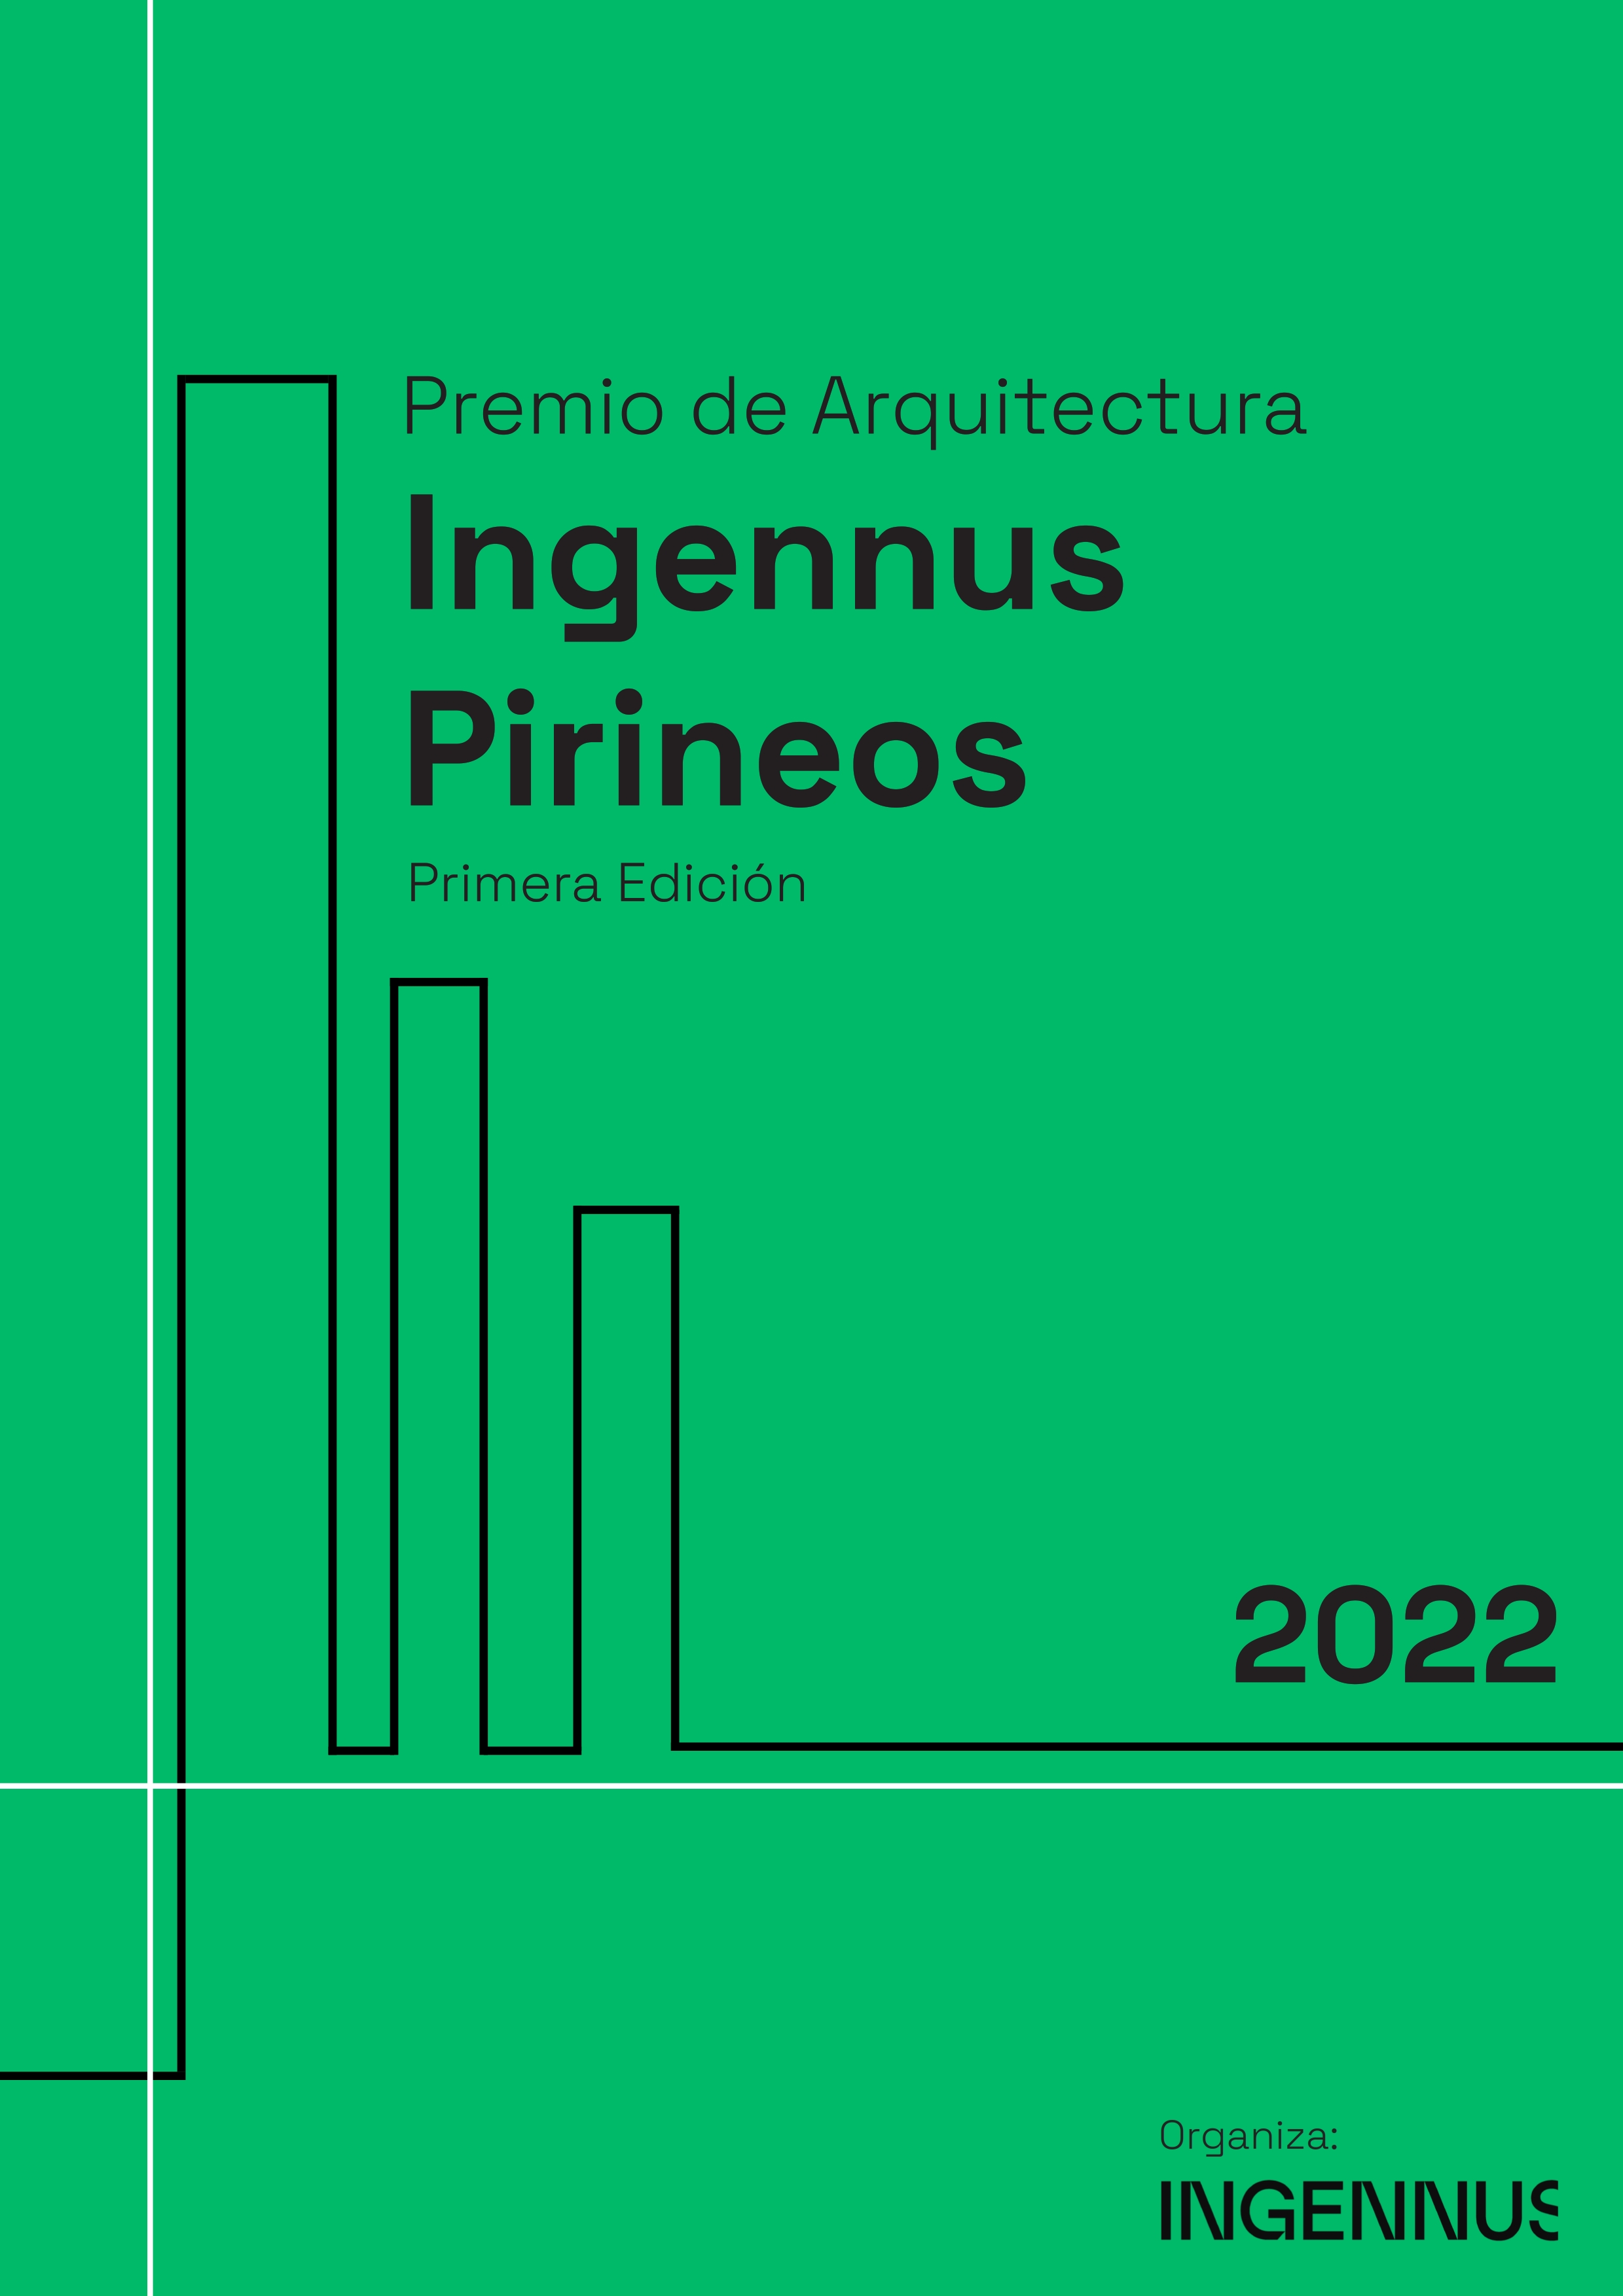 Premio Arquitectura Ingennus Pirineos 2022_001.jpg